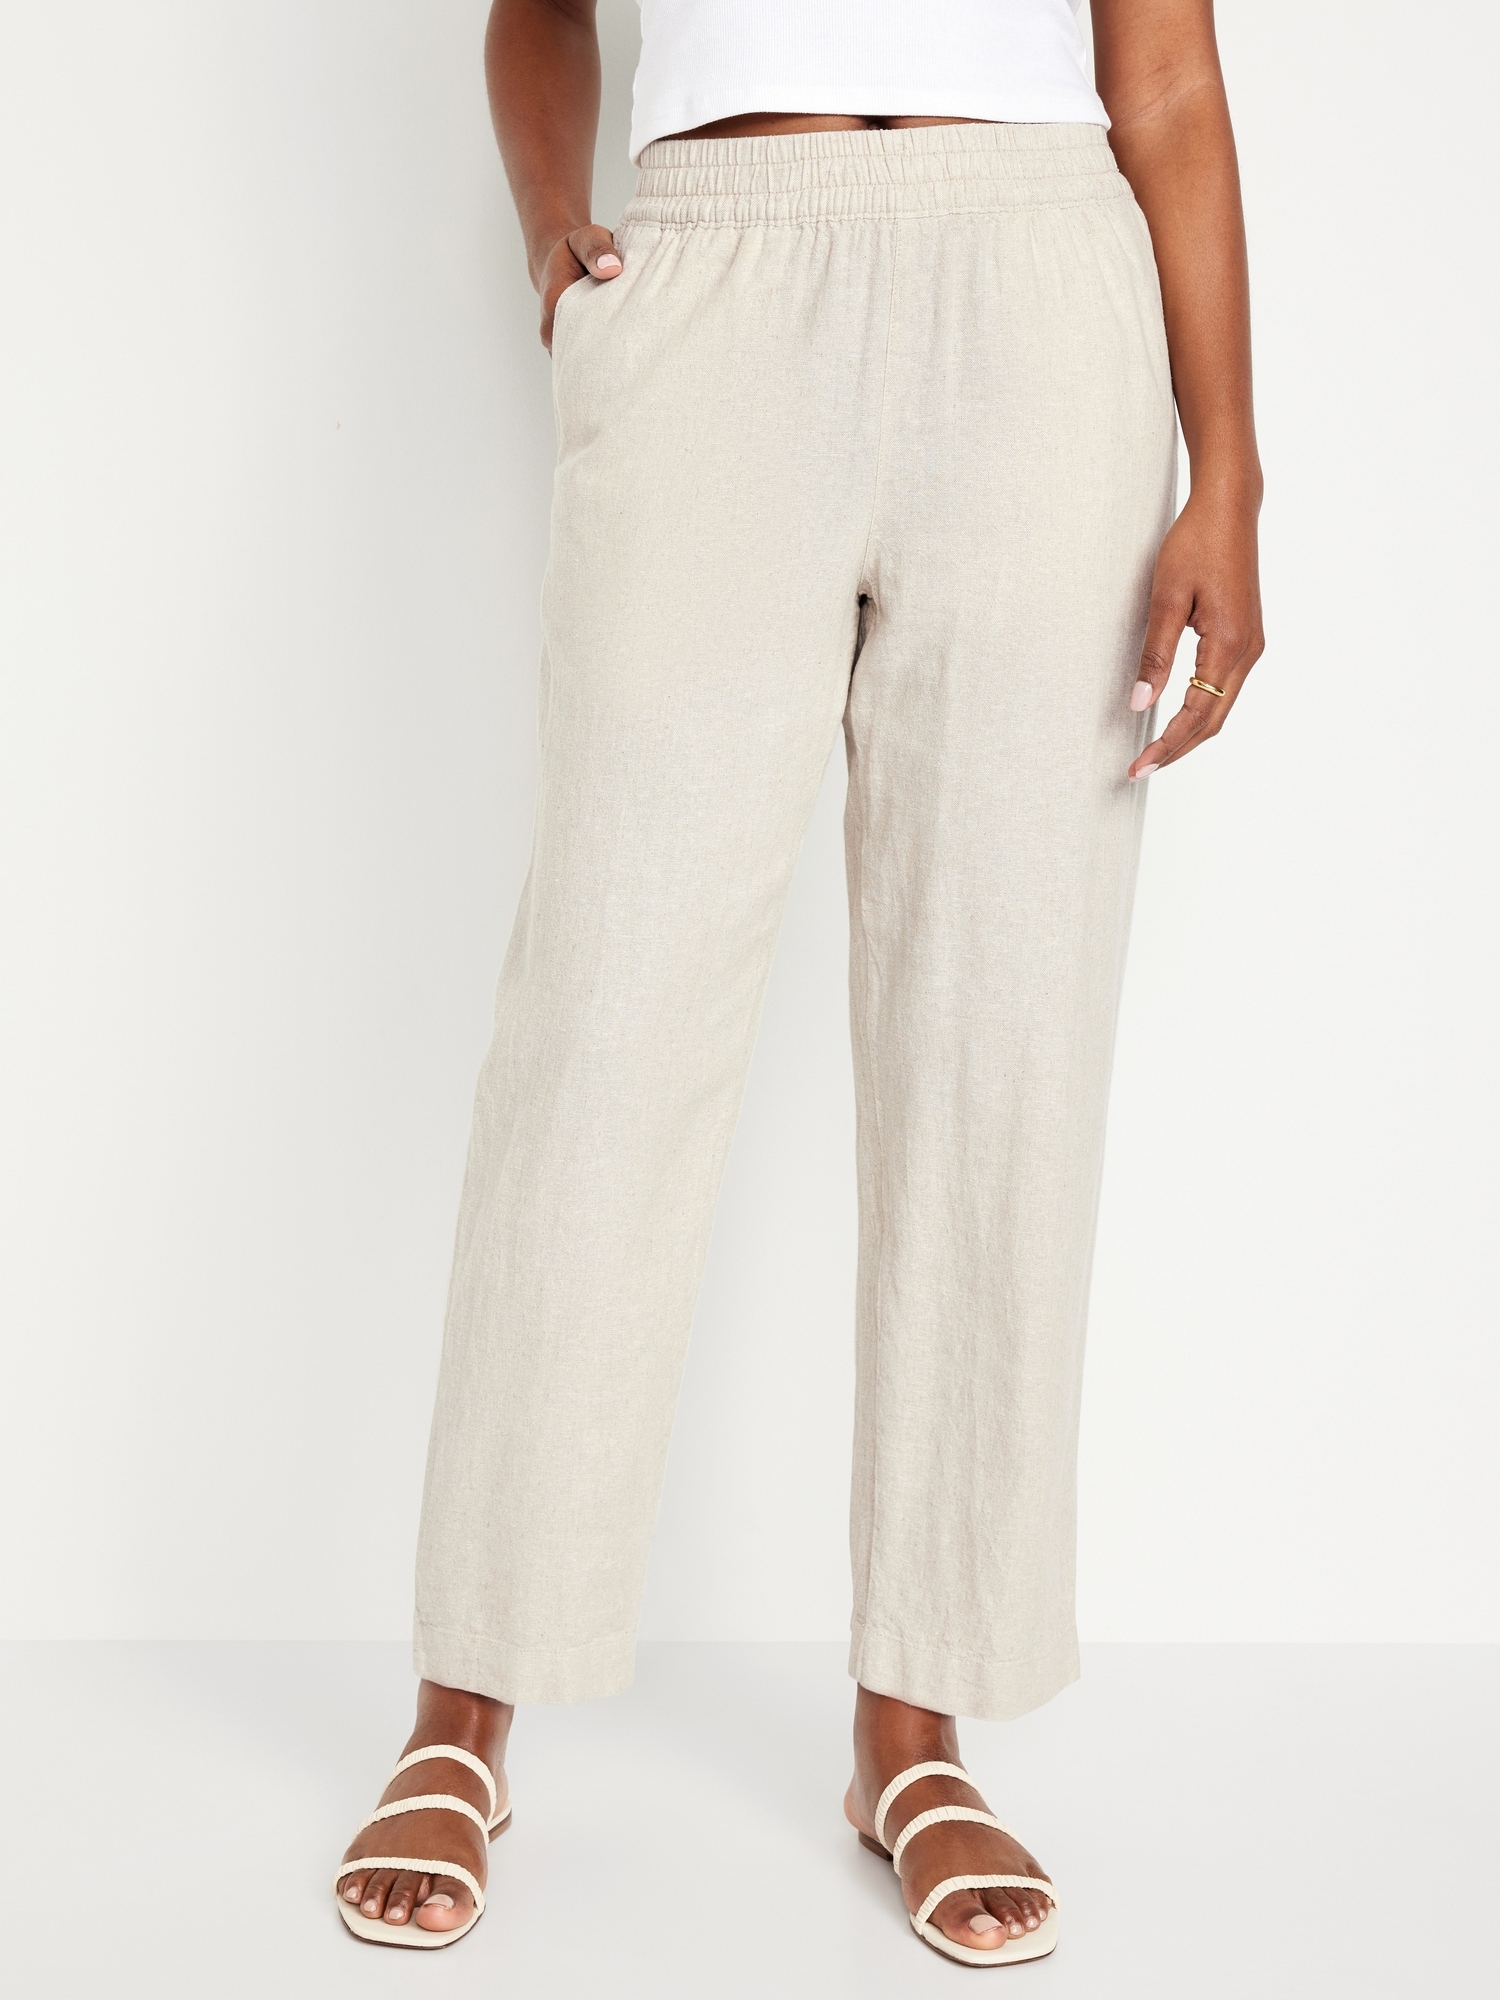 H&M Womens Pants Szie 8 Tan Paperbag High Rise Wide Leg Deep Pockets  Lightweight